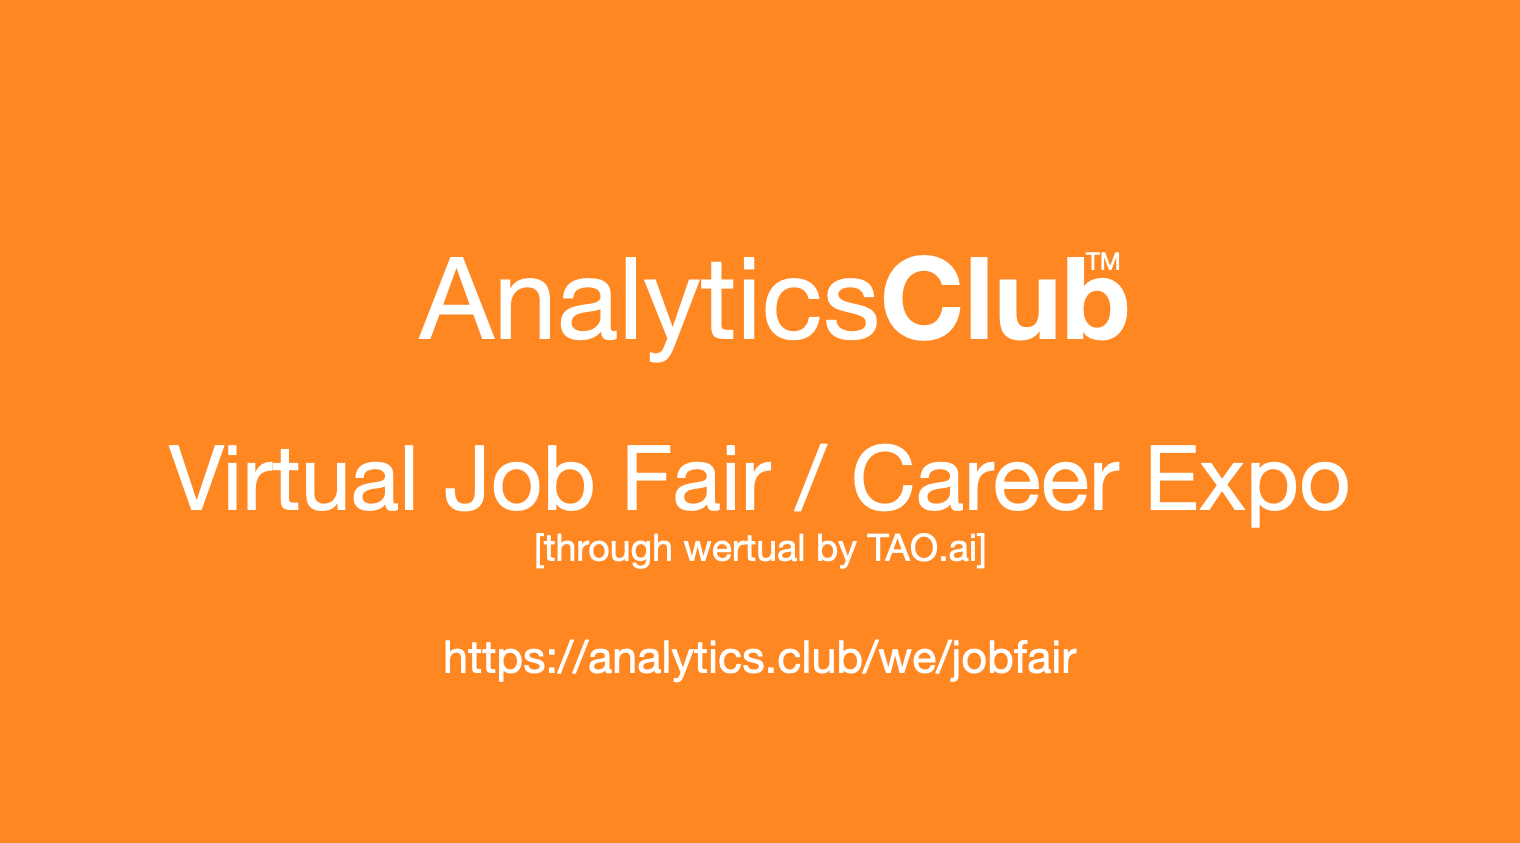 #AnalyticsClub Virtual Job Fair / Career Expo Event #Houston